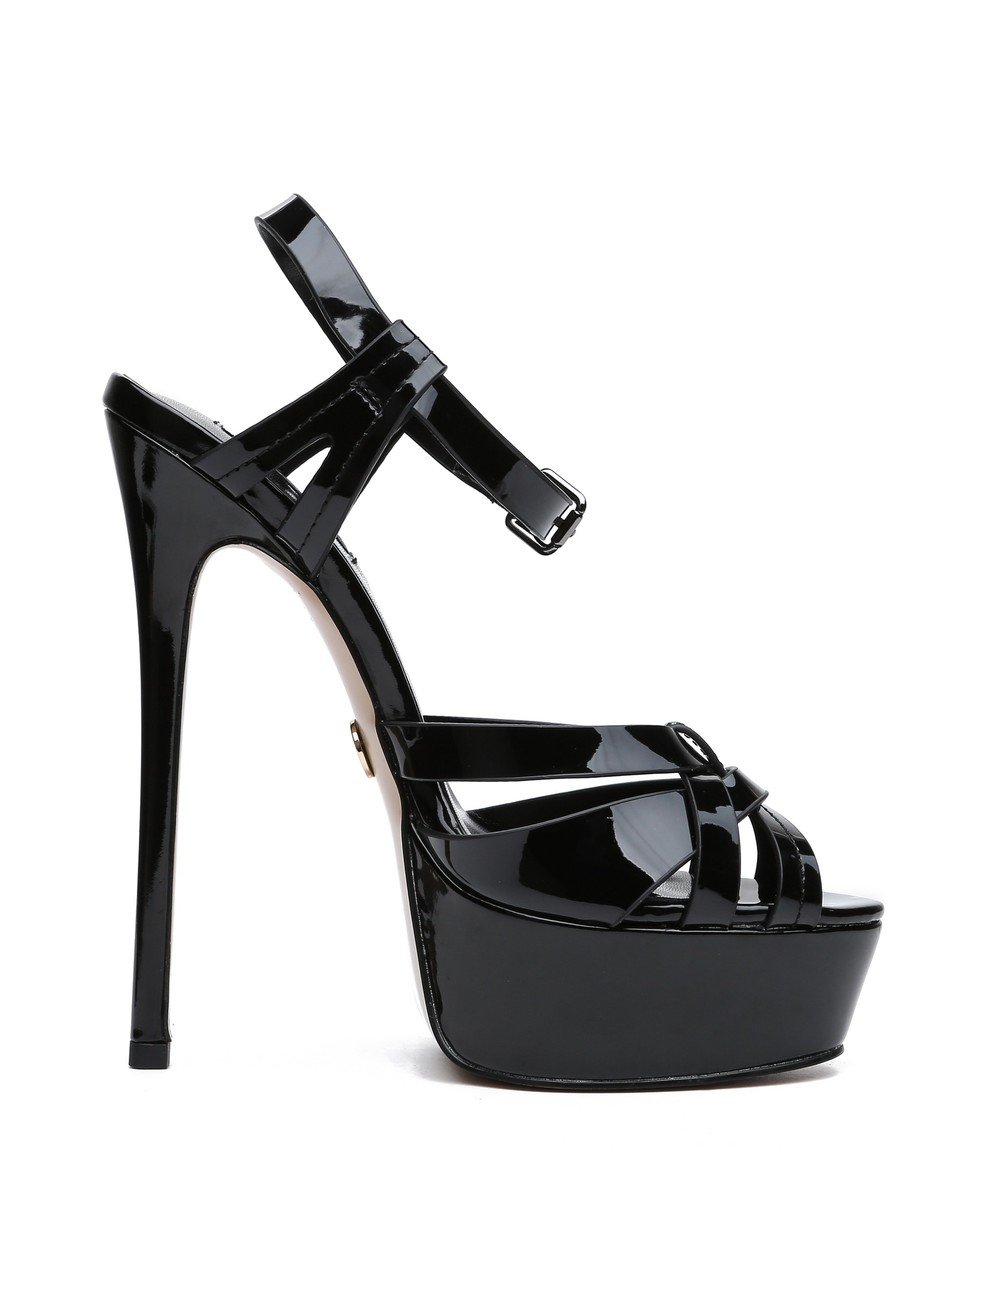 Giaro KORI BLACK SHINY SANDALS - Shoebidoo Shoes | Giaro high heels